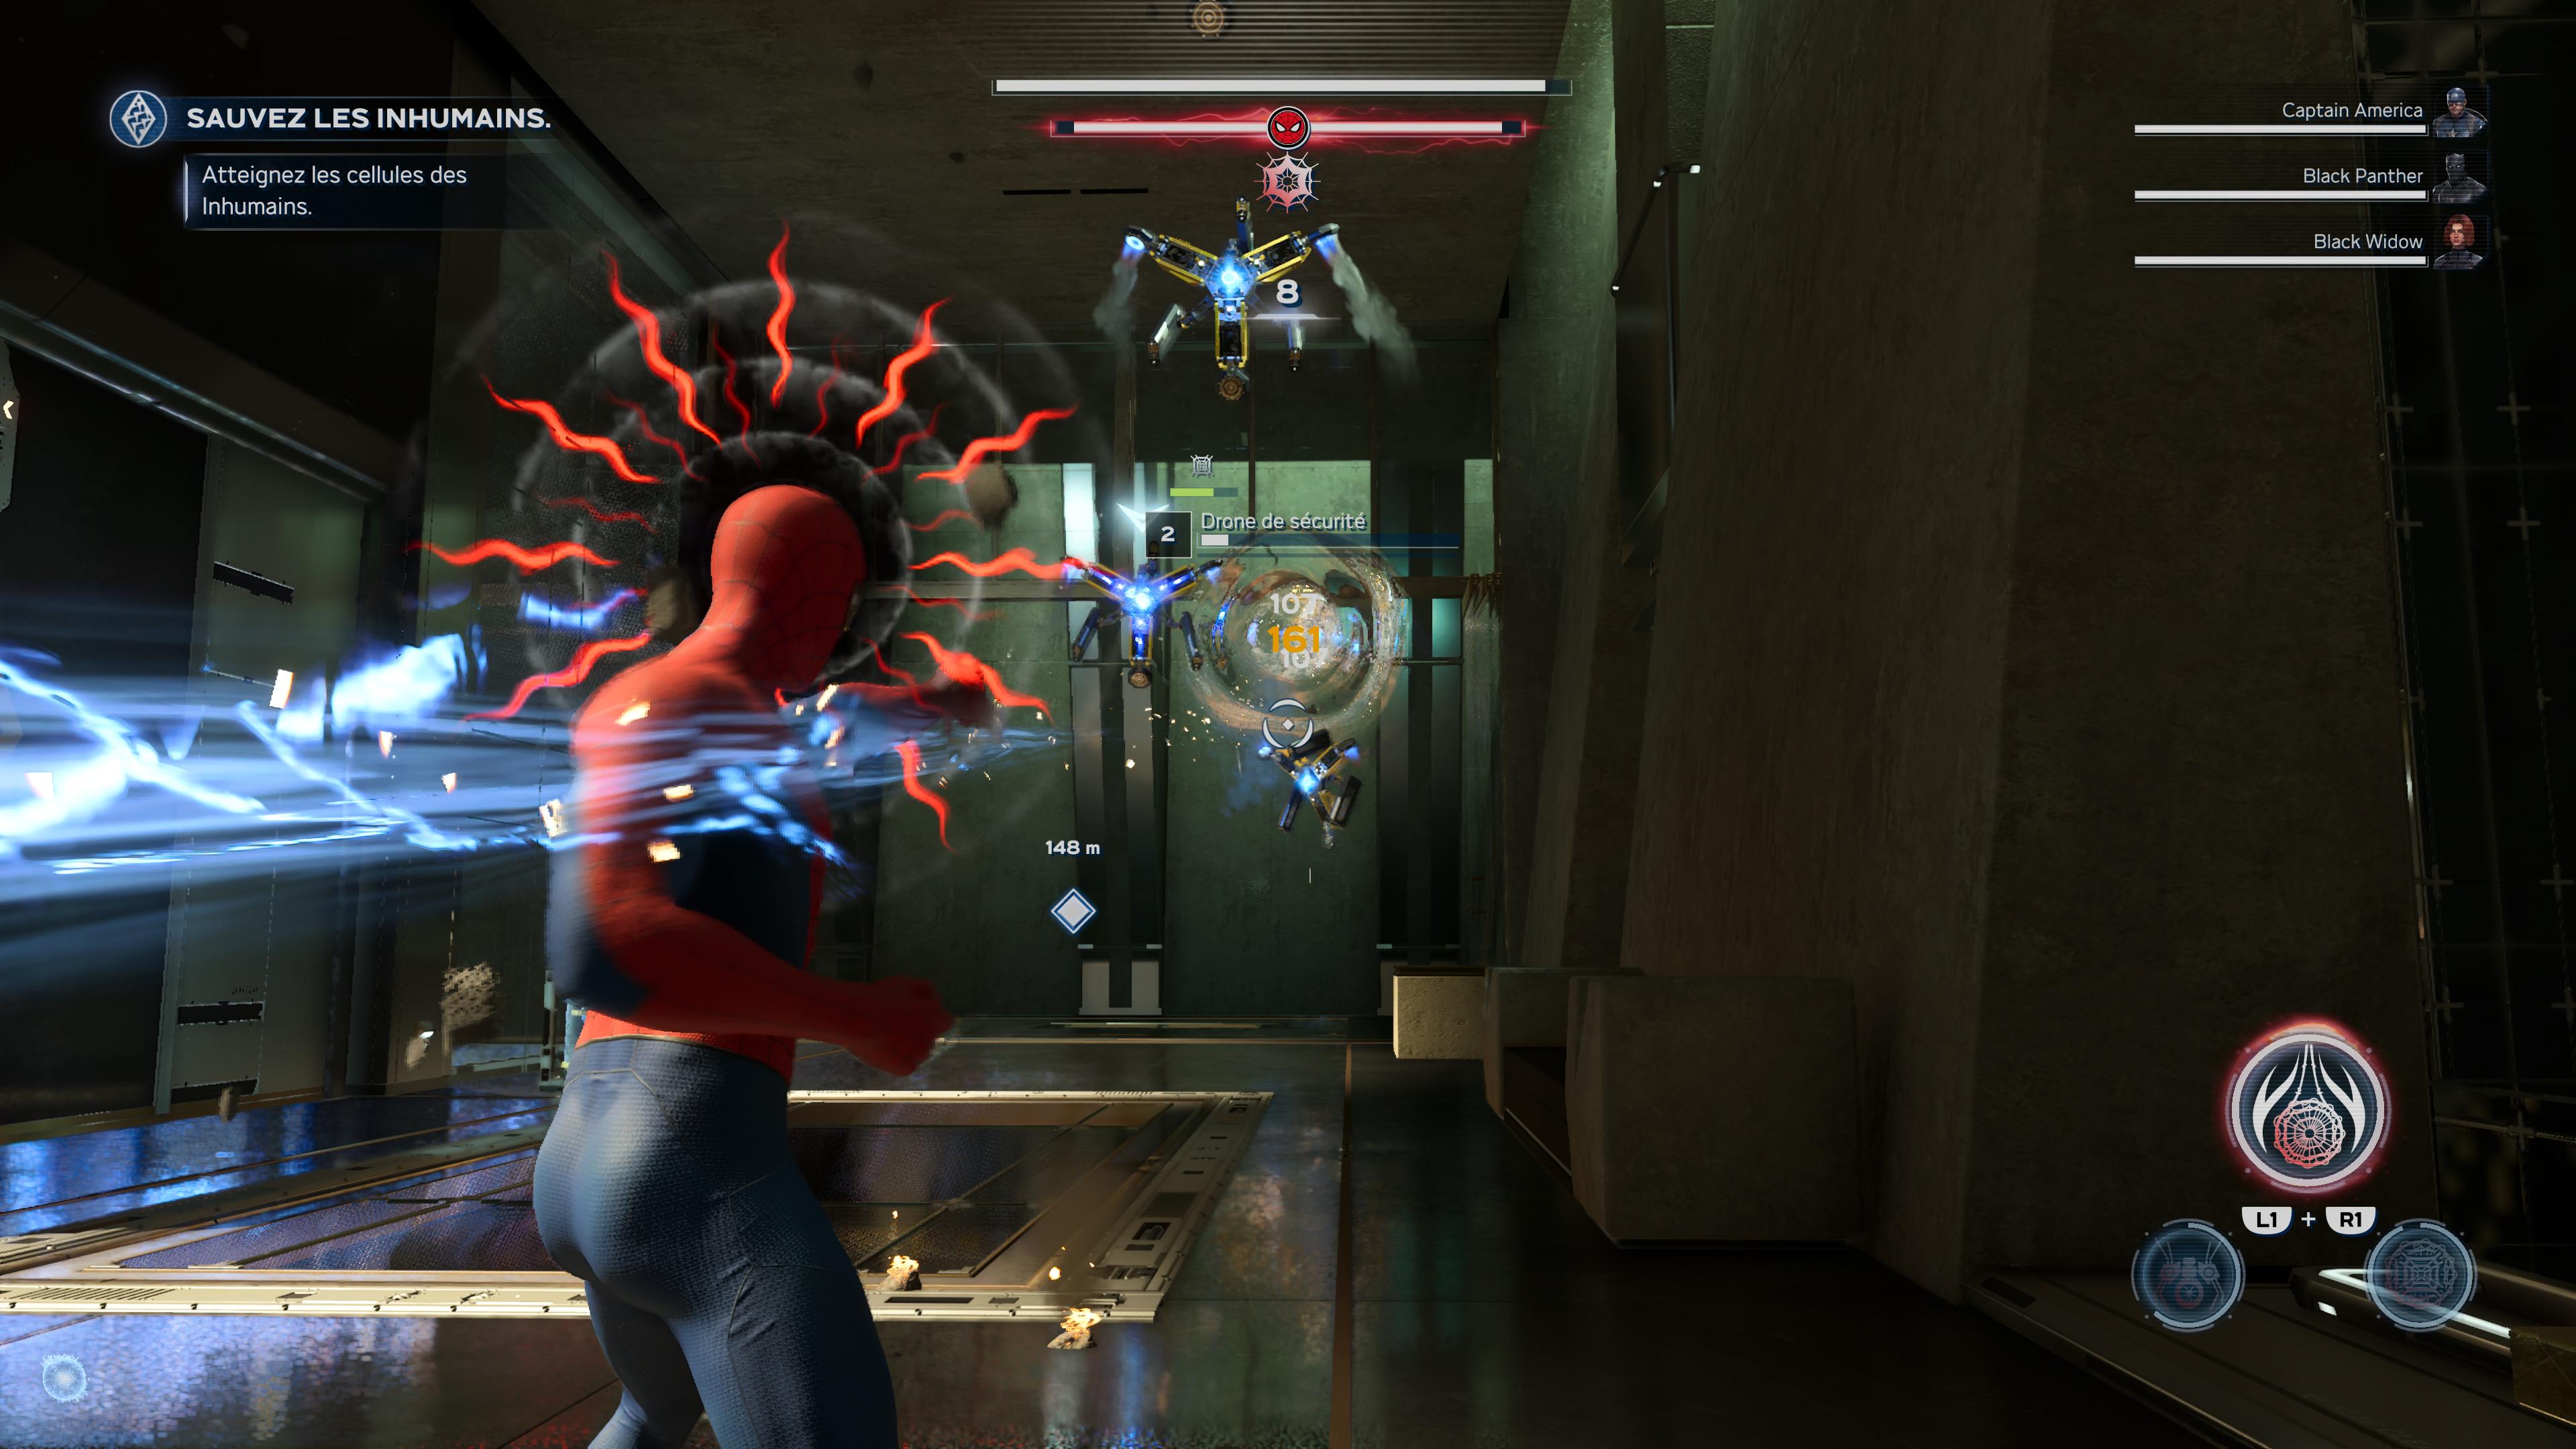 Marvel avengers spider man 7 19